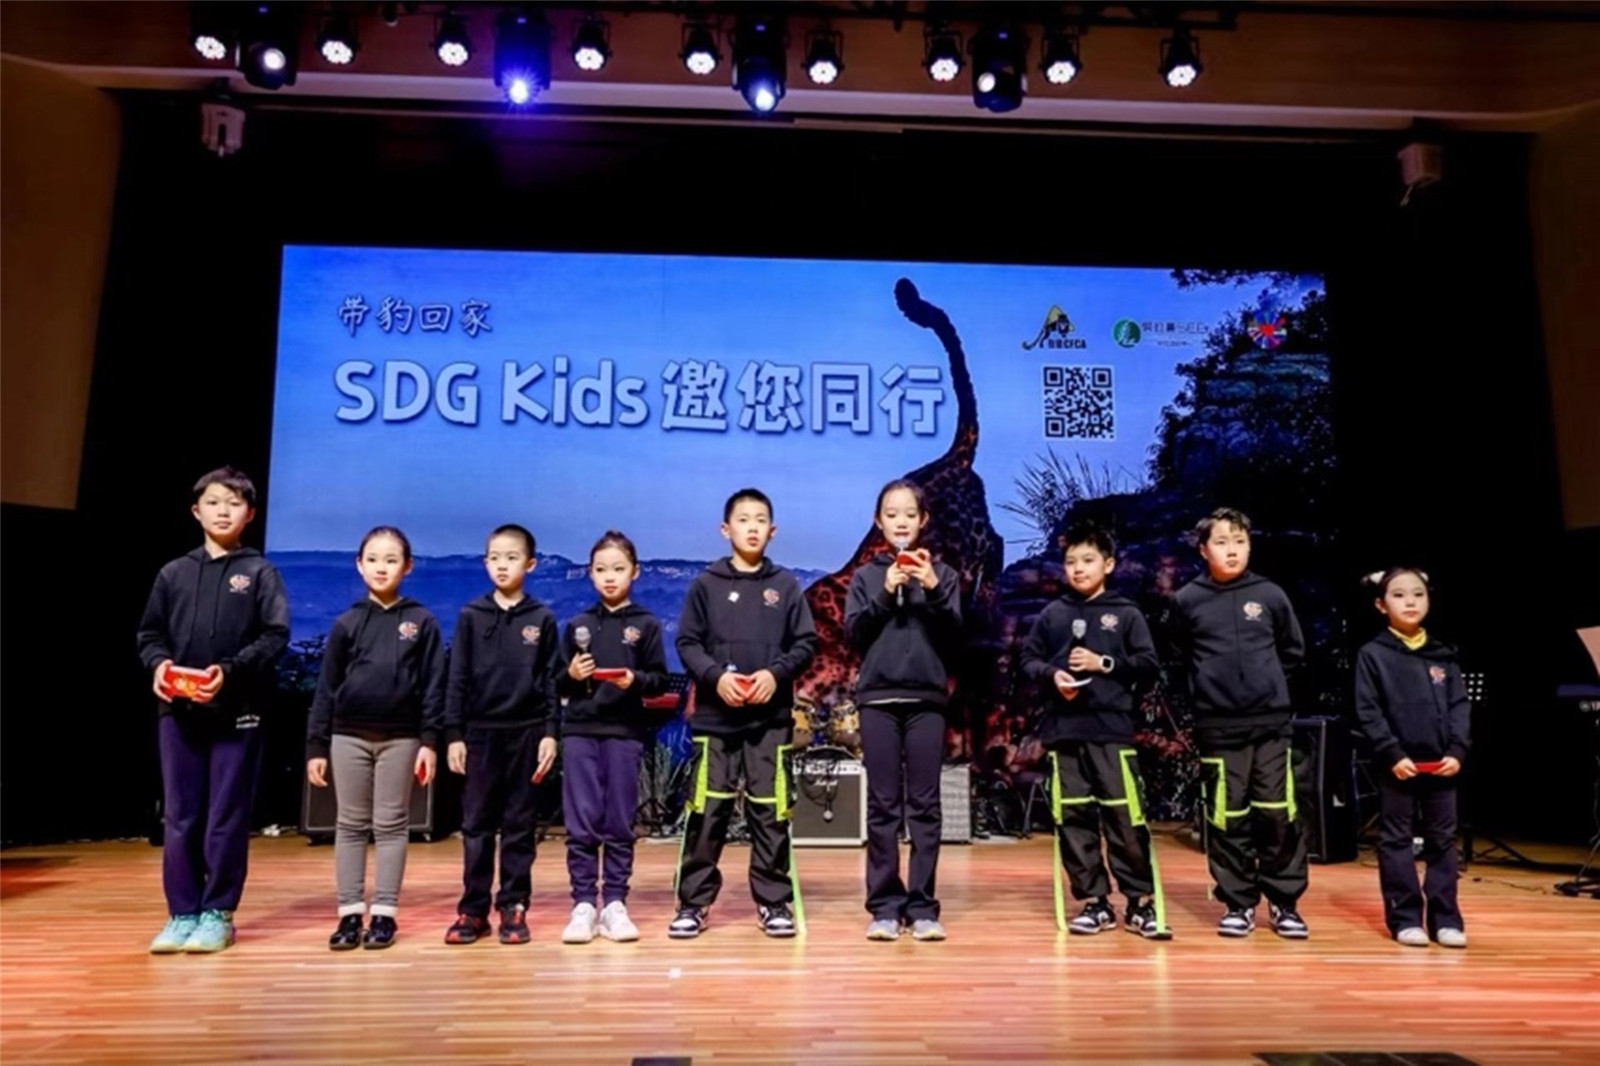 SDG kids